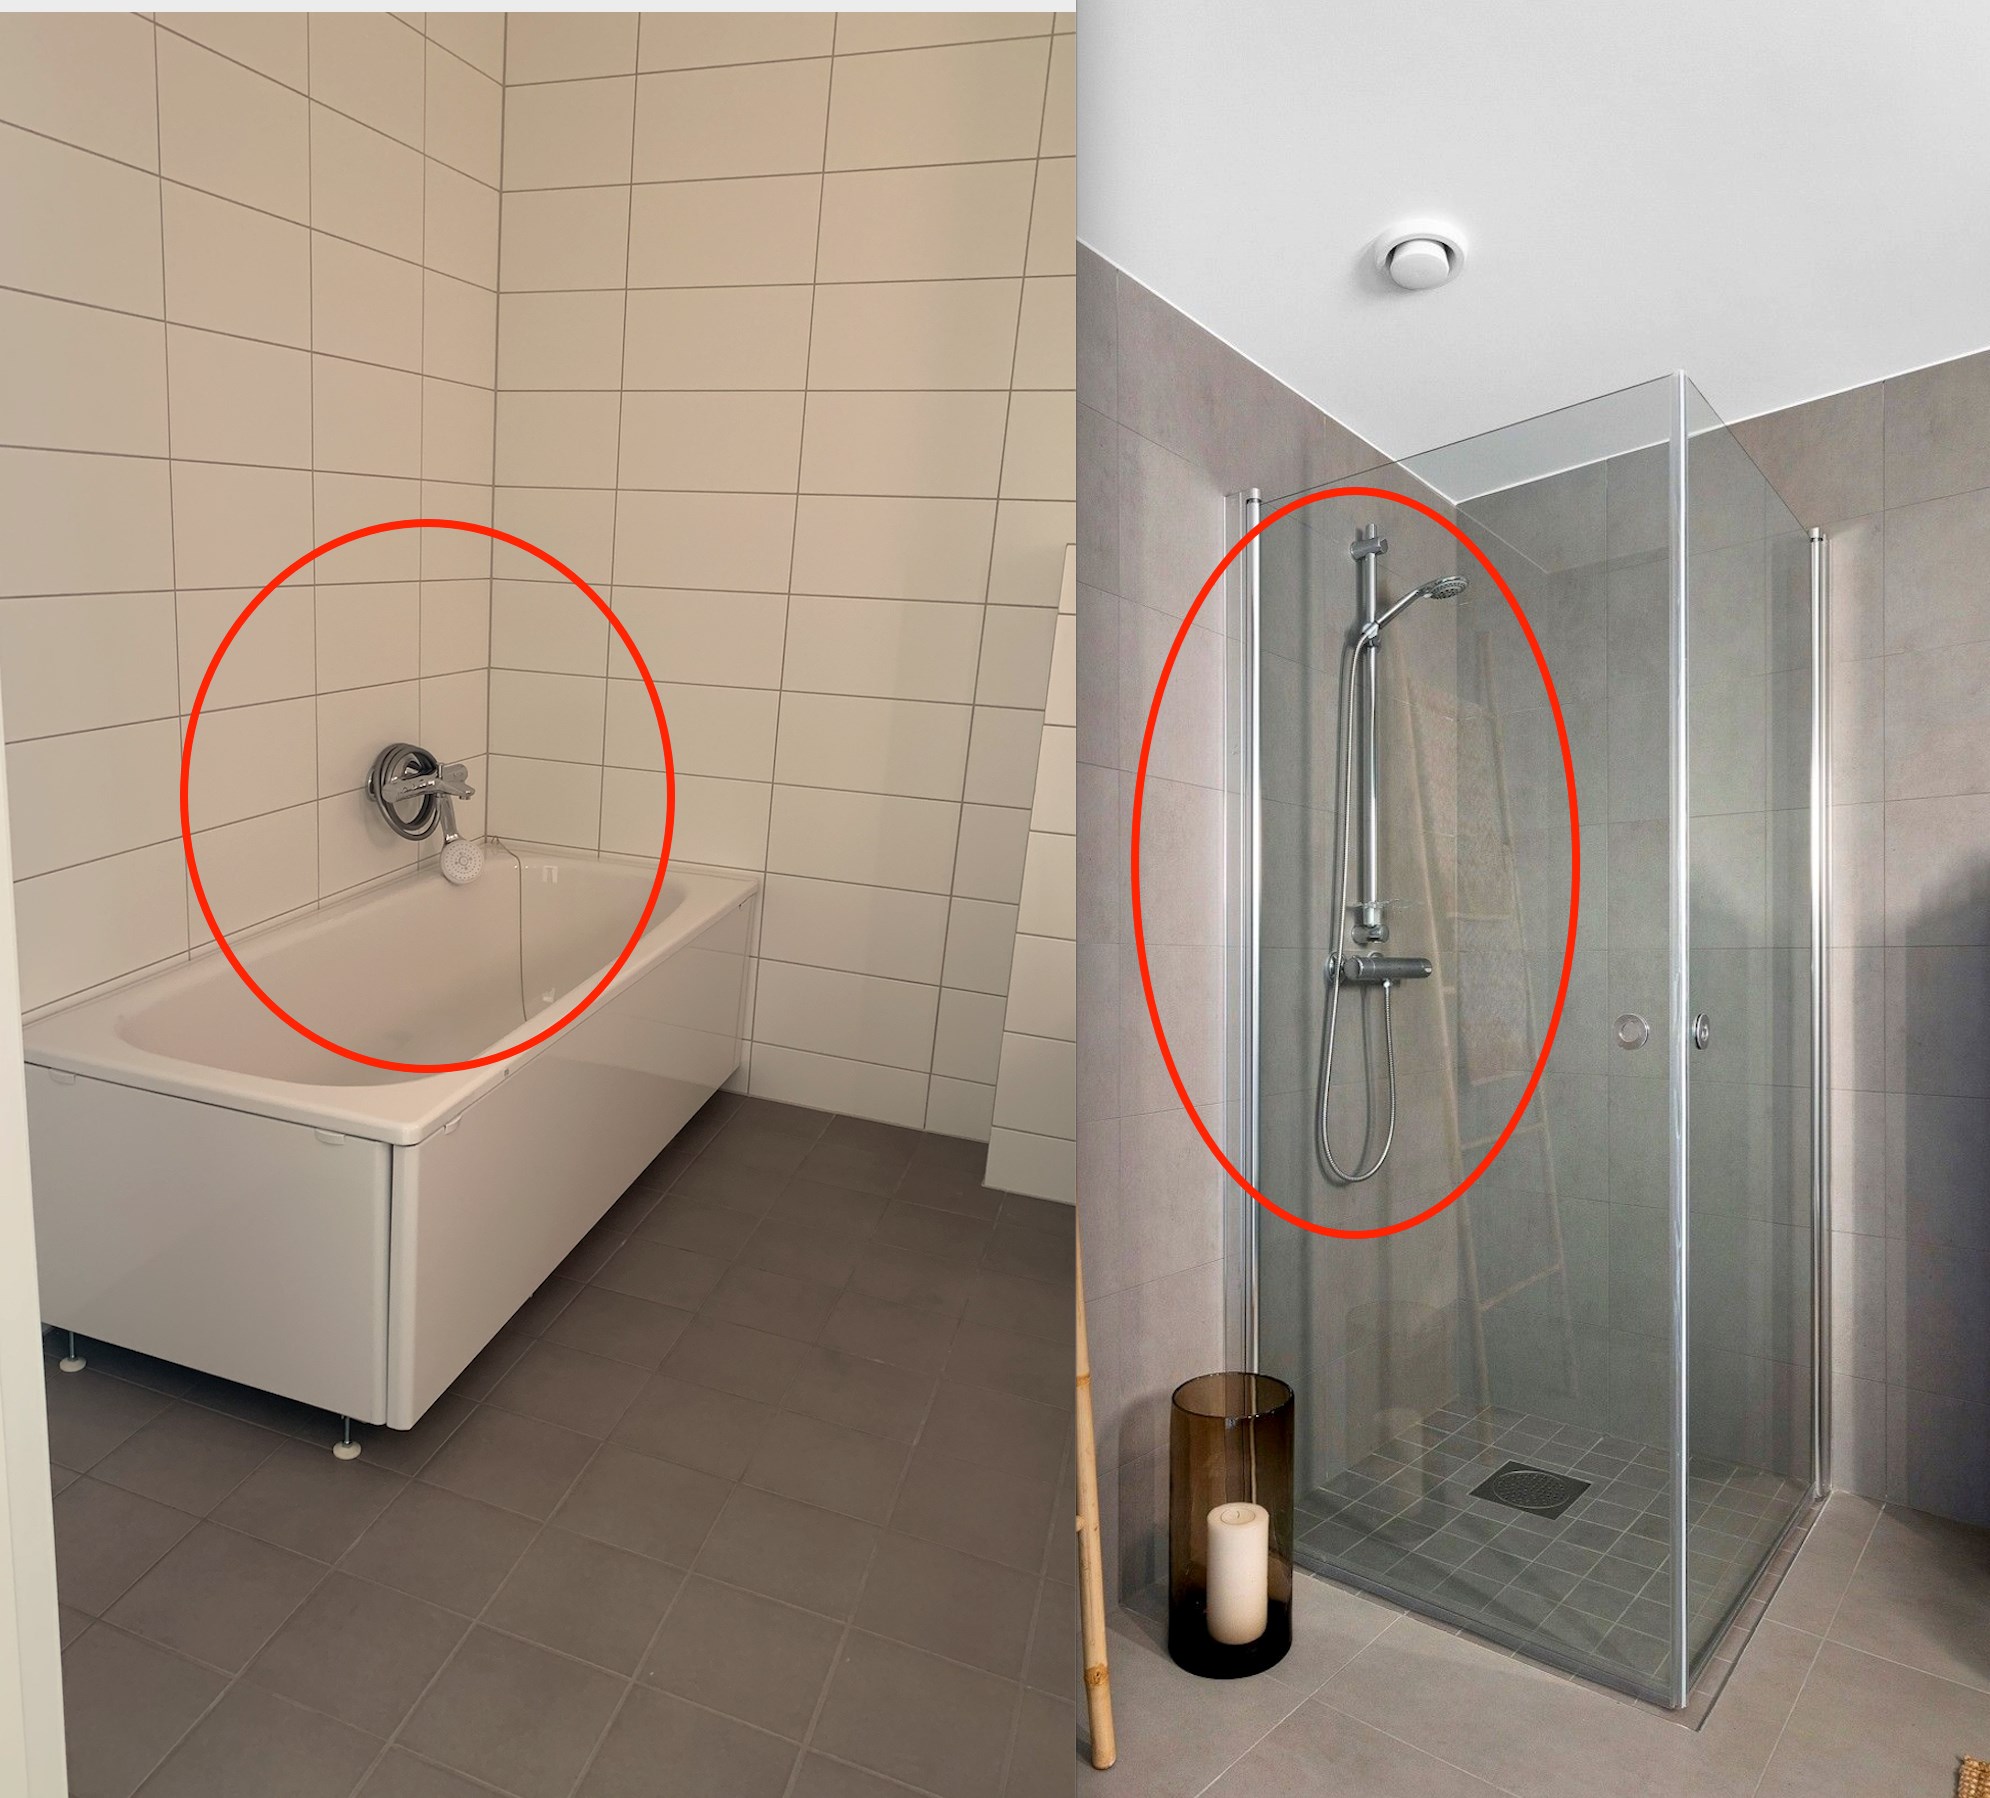 Feil under befaring av nybygg - fjerne badekar og montere dusj - gips, våtromssystem eller fliser for montering av dusj? - Hovedbad.jpg - Joell